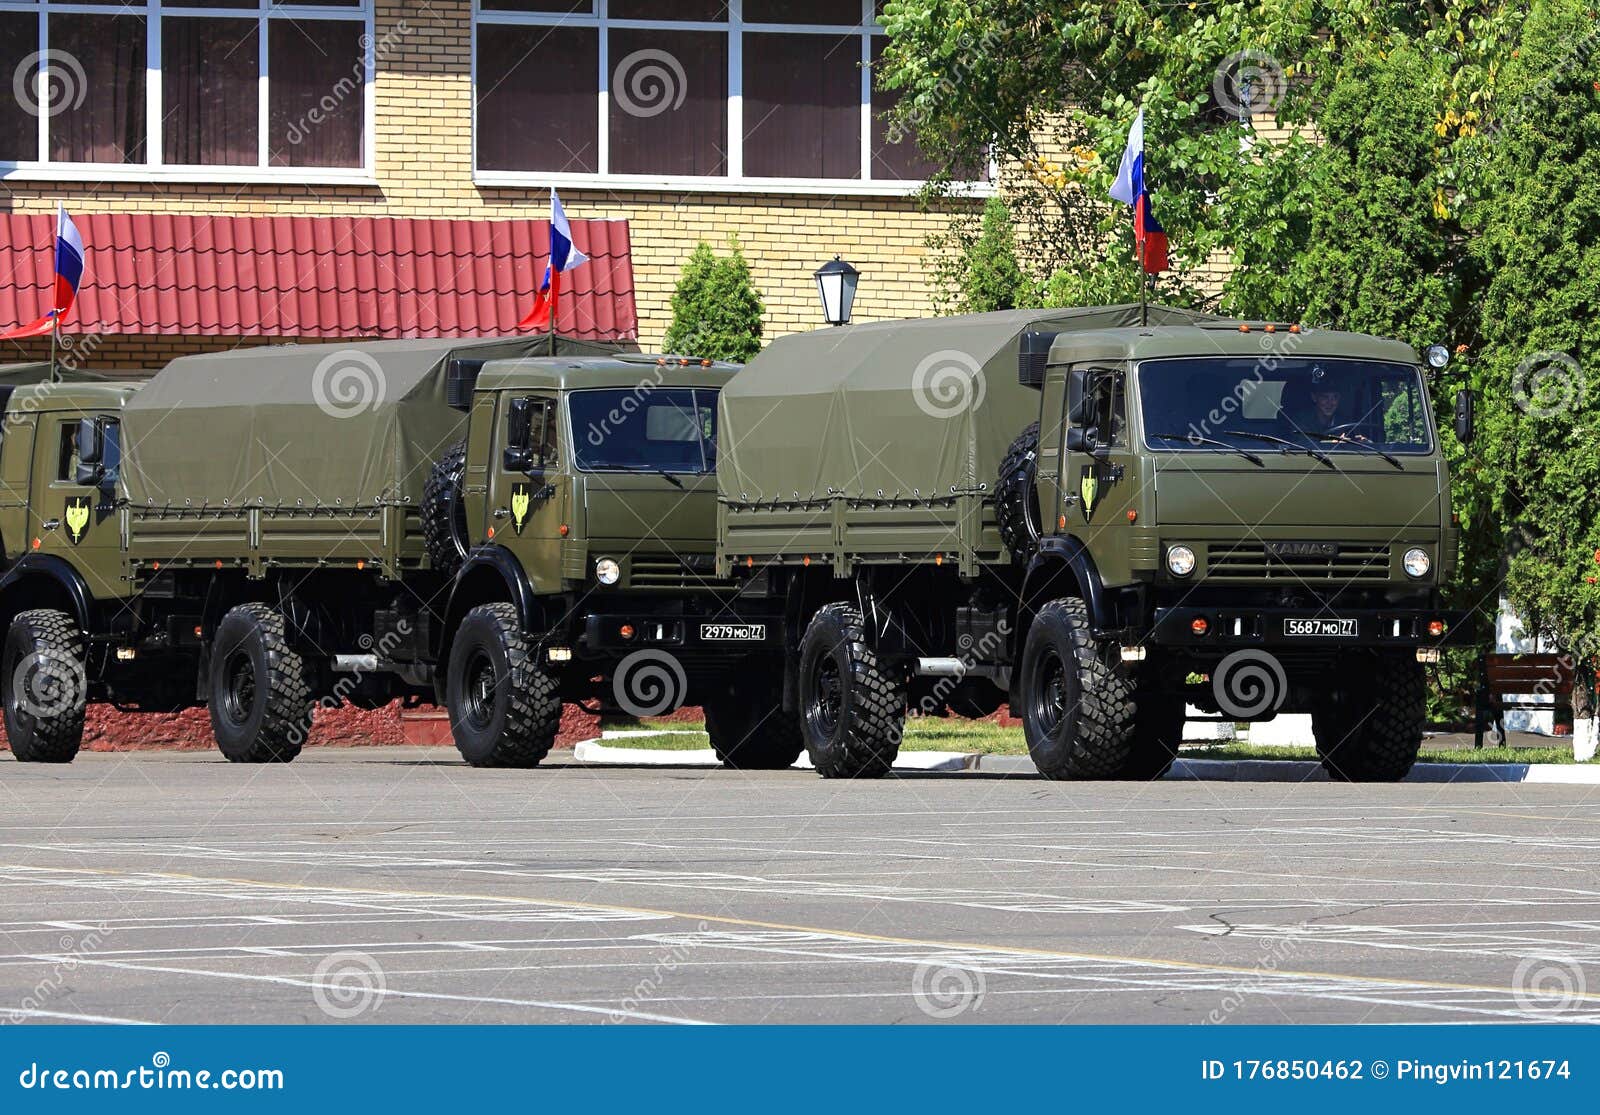 乌拉尔卡车,俄罗斯maz重型军用卡车 - 伤感说说吧